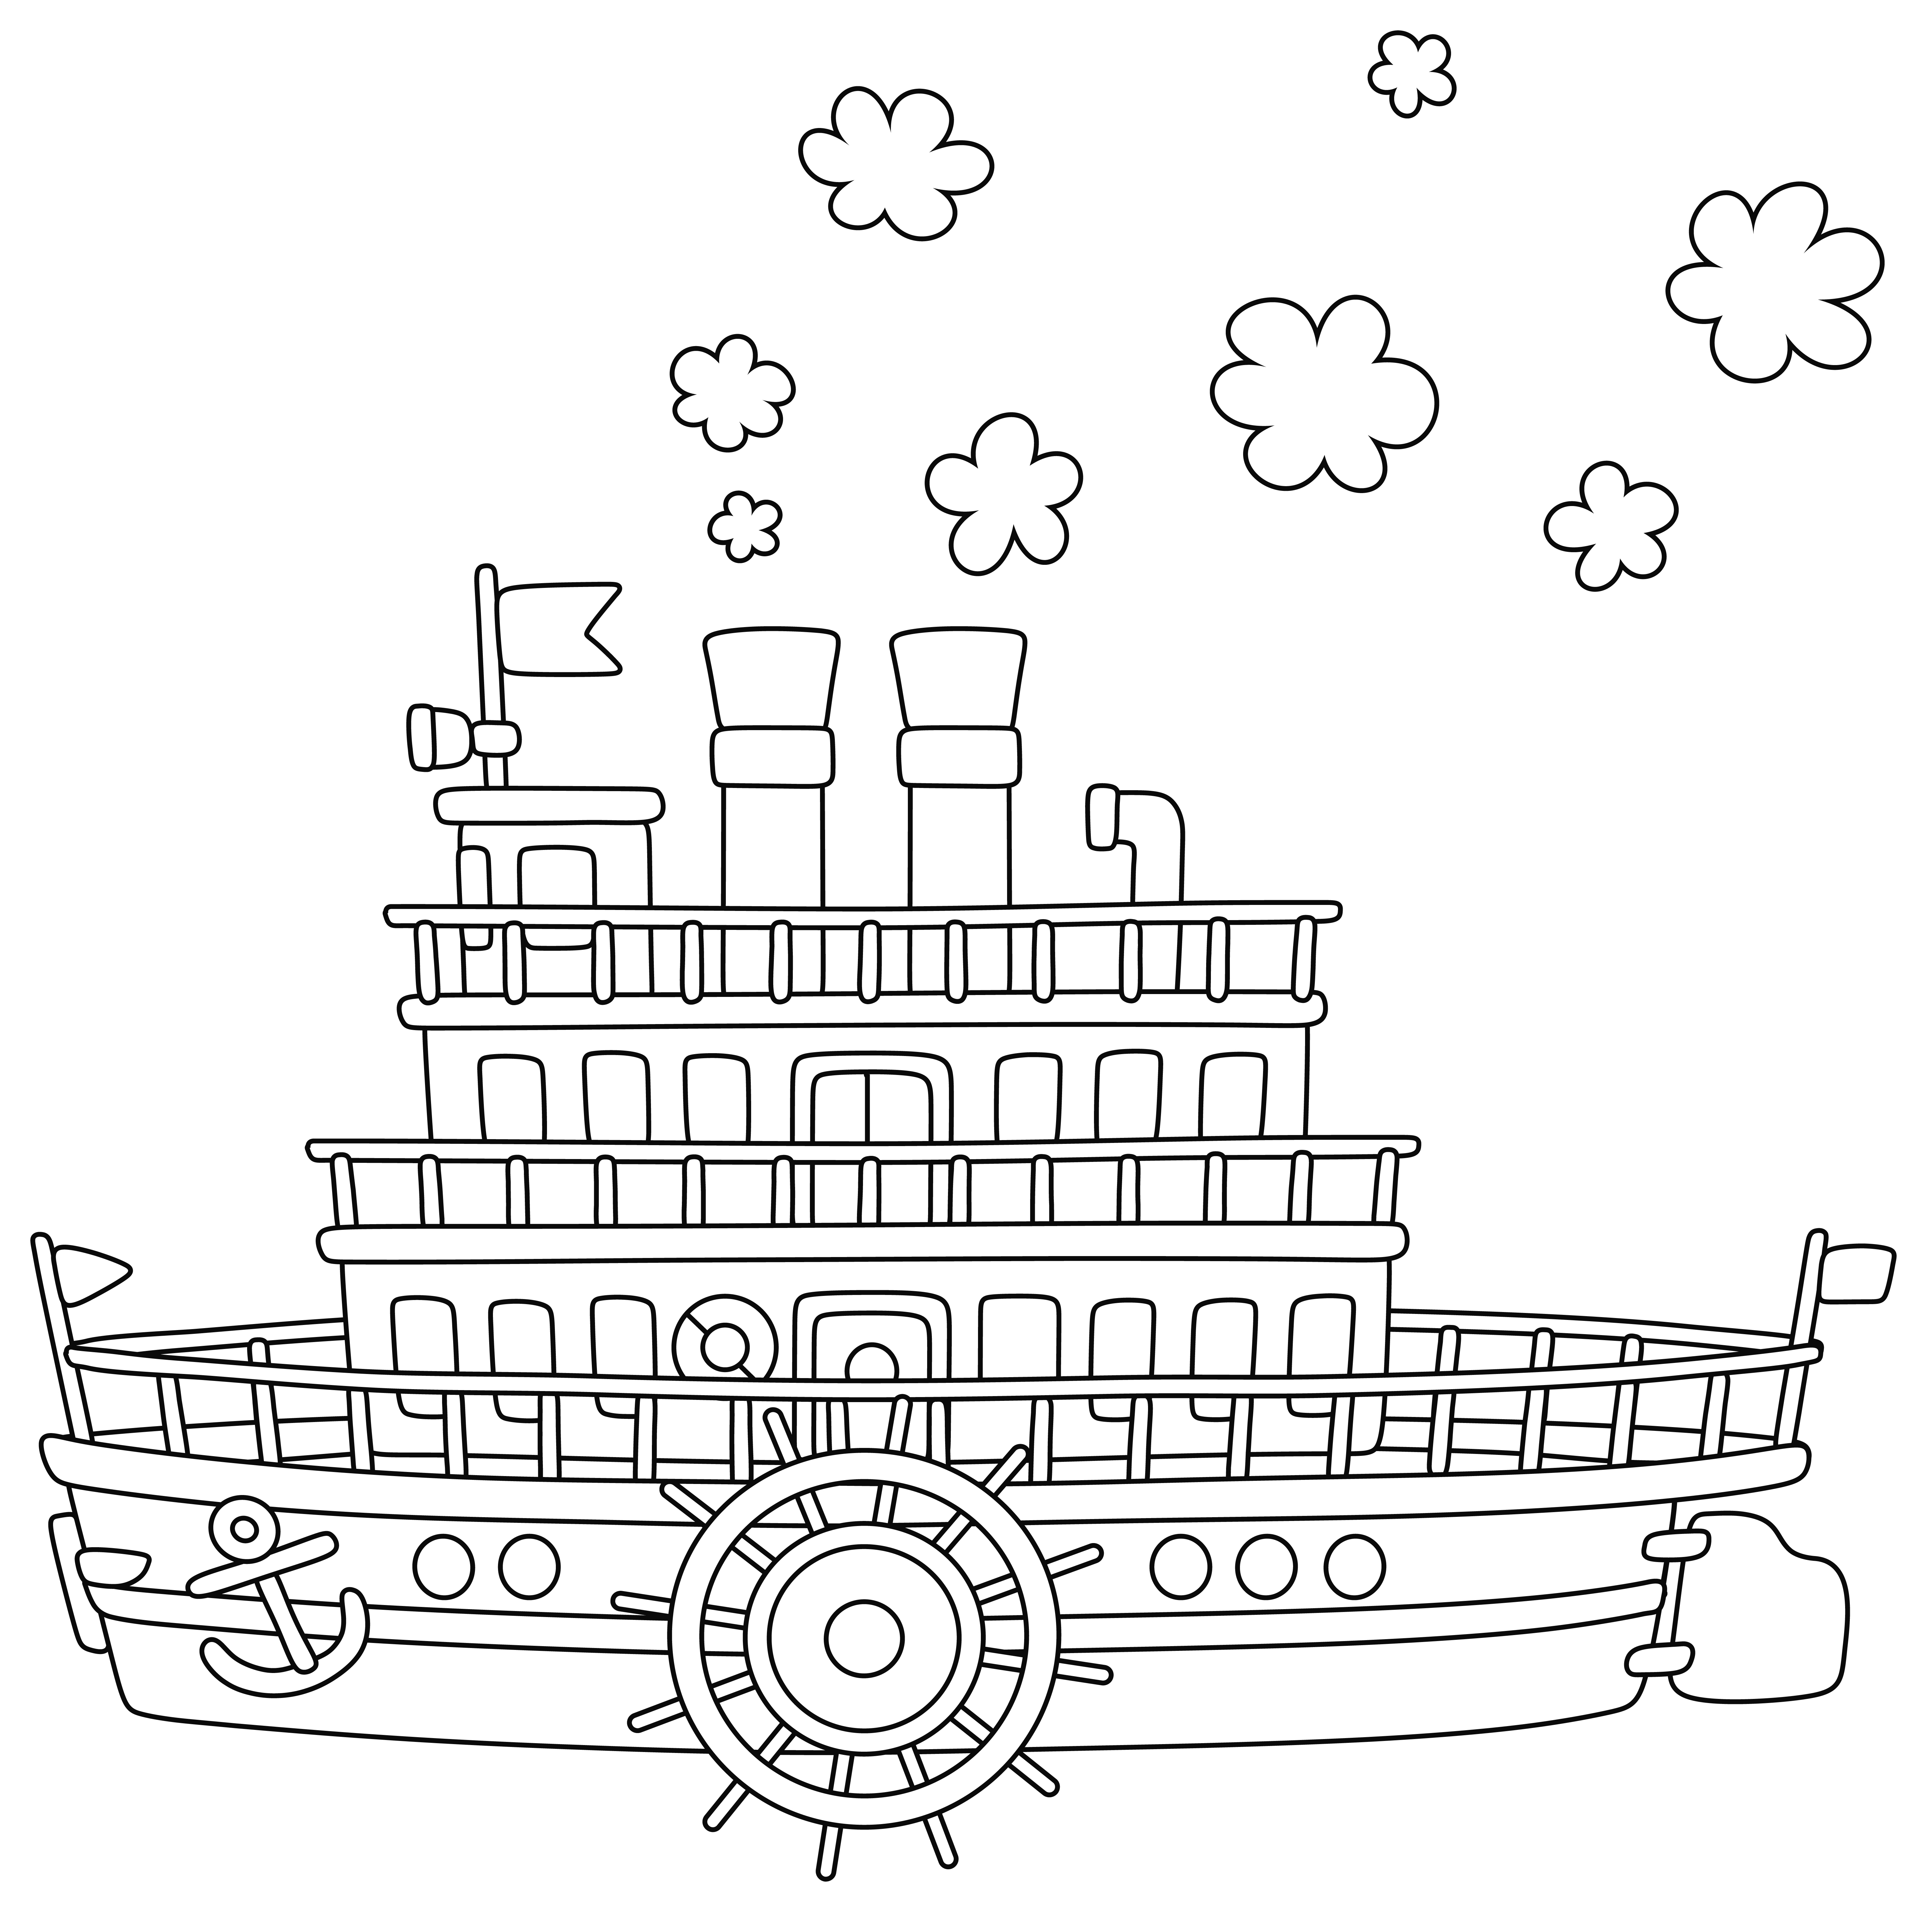 Раскраска старый корабль пароход с большим колесом формата А4 в высоком качестве